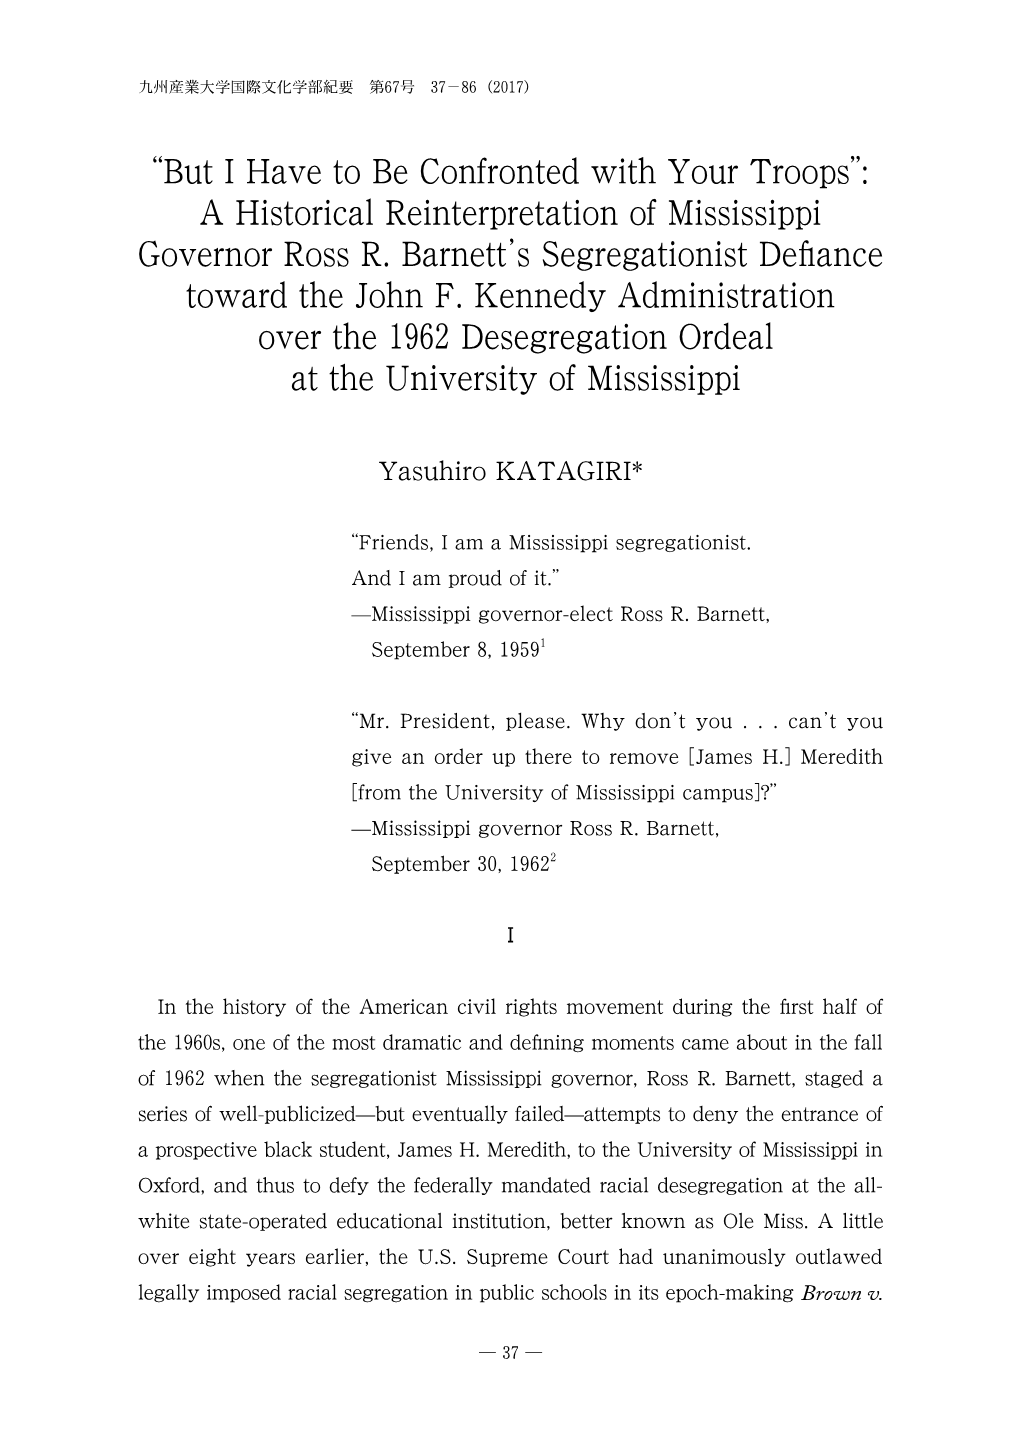 A Historical Reinterpretation of Mississippi Governor Ross R